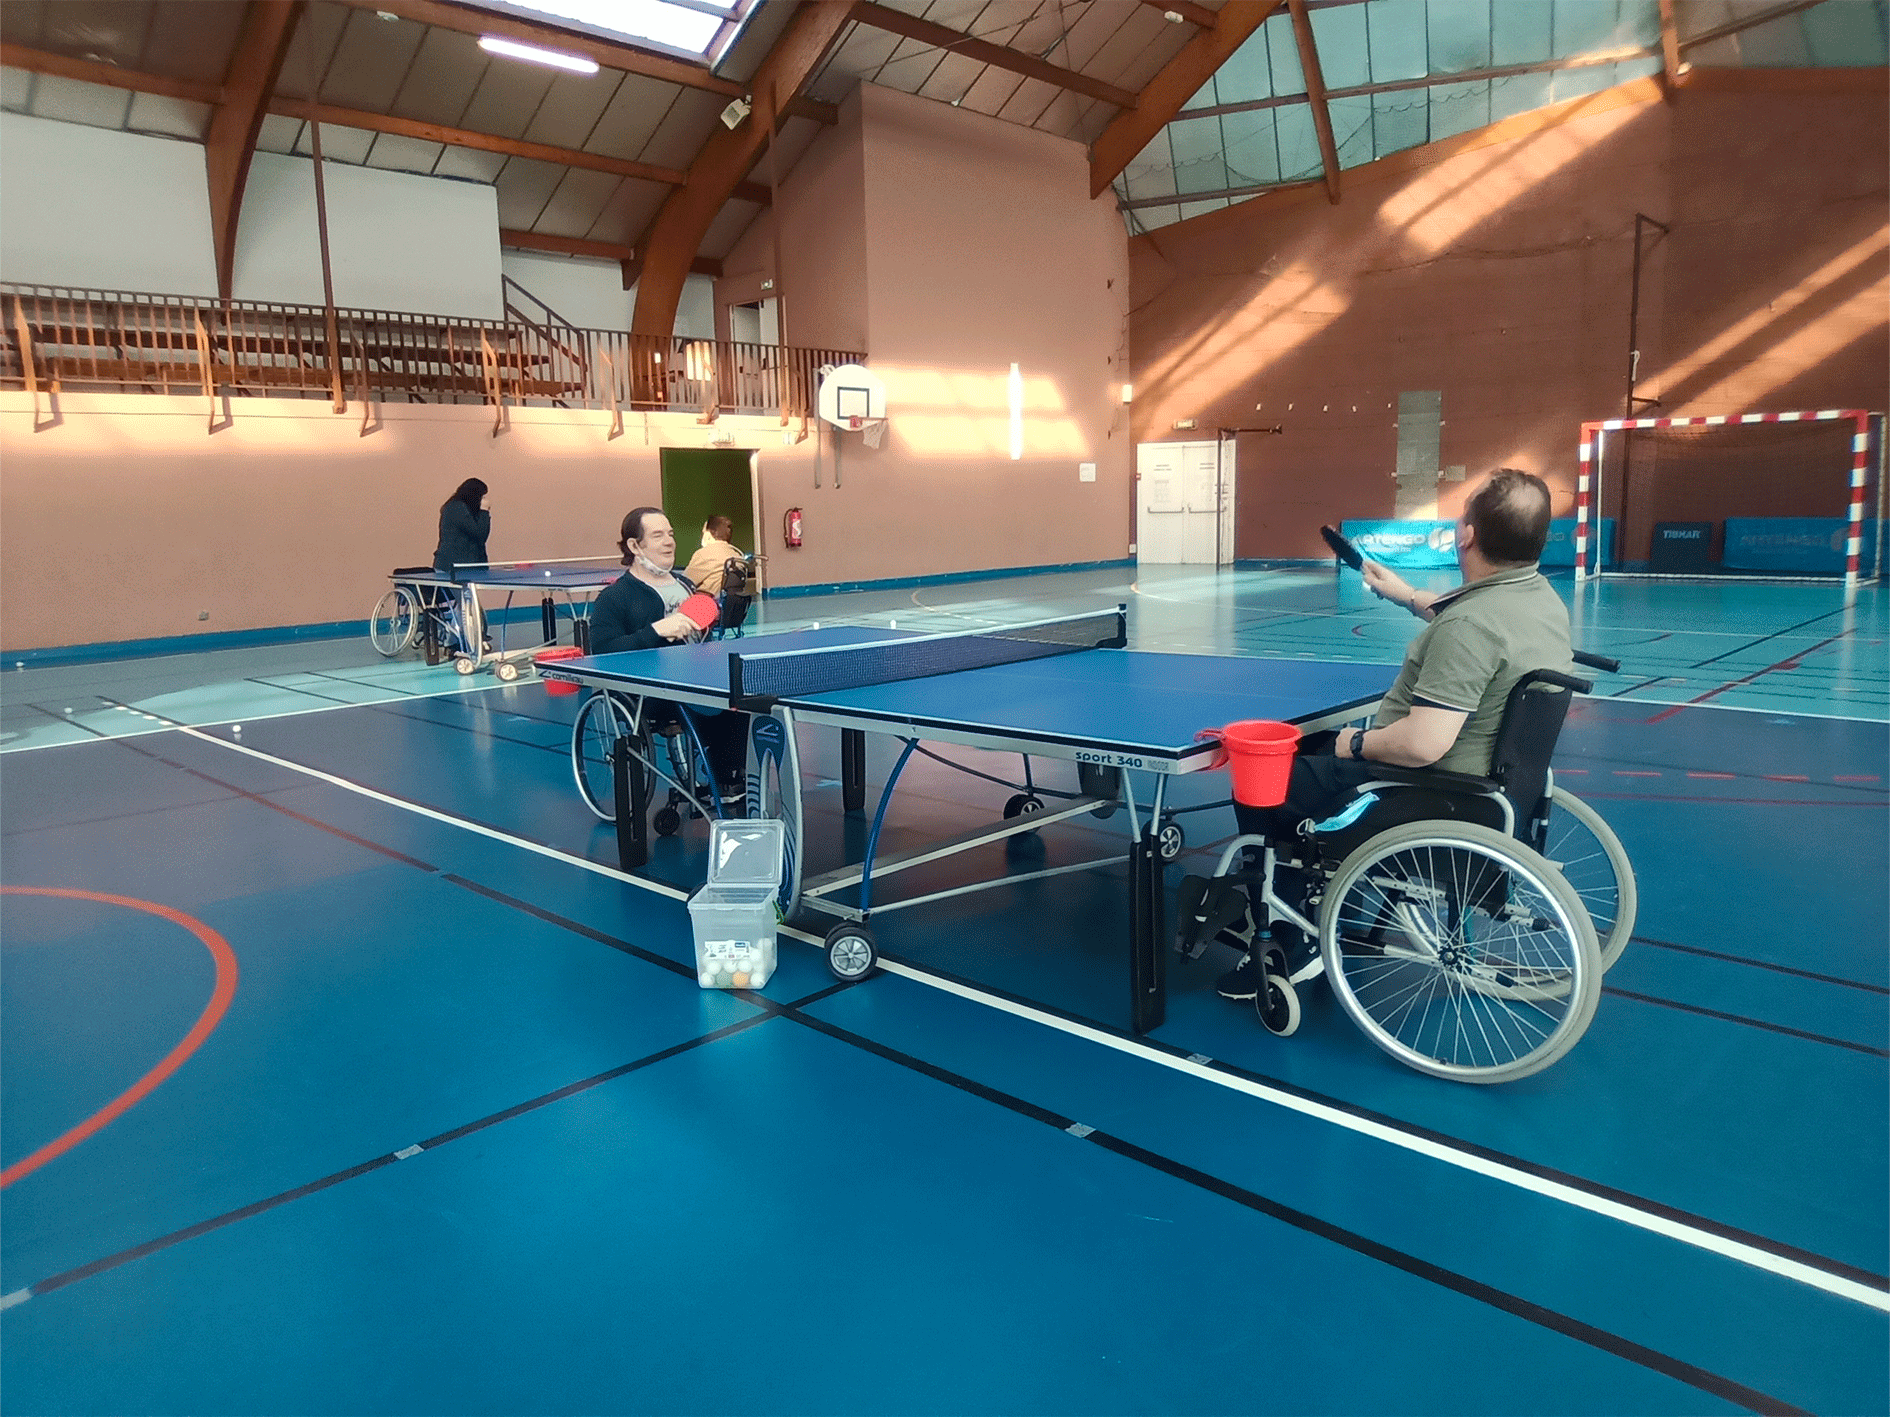 tennis-de-table-multisports-fauteuil-sante-bien-etre-clt-tourlaville